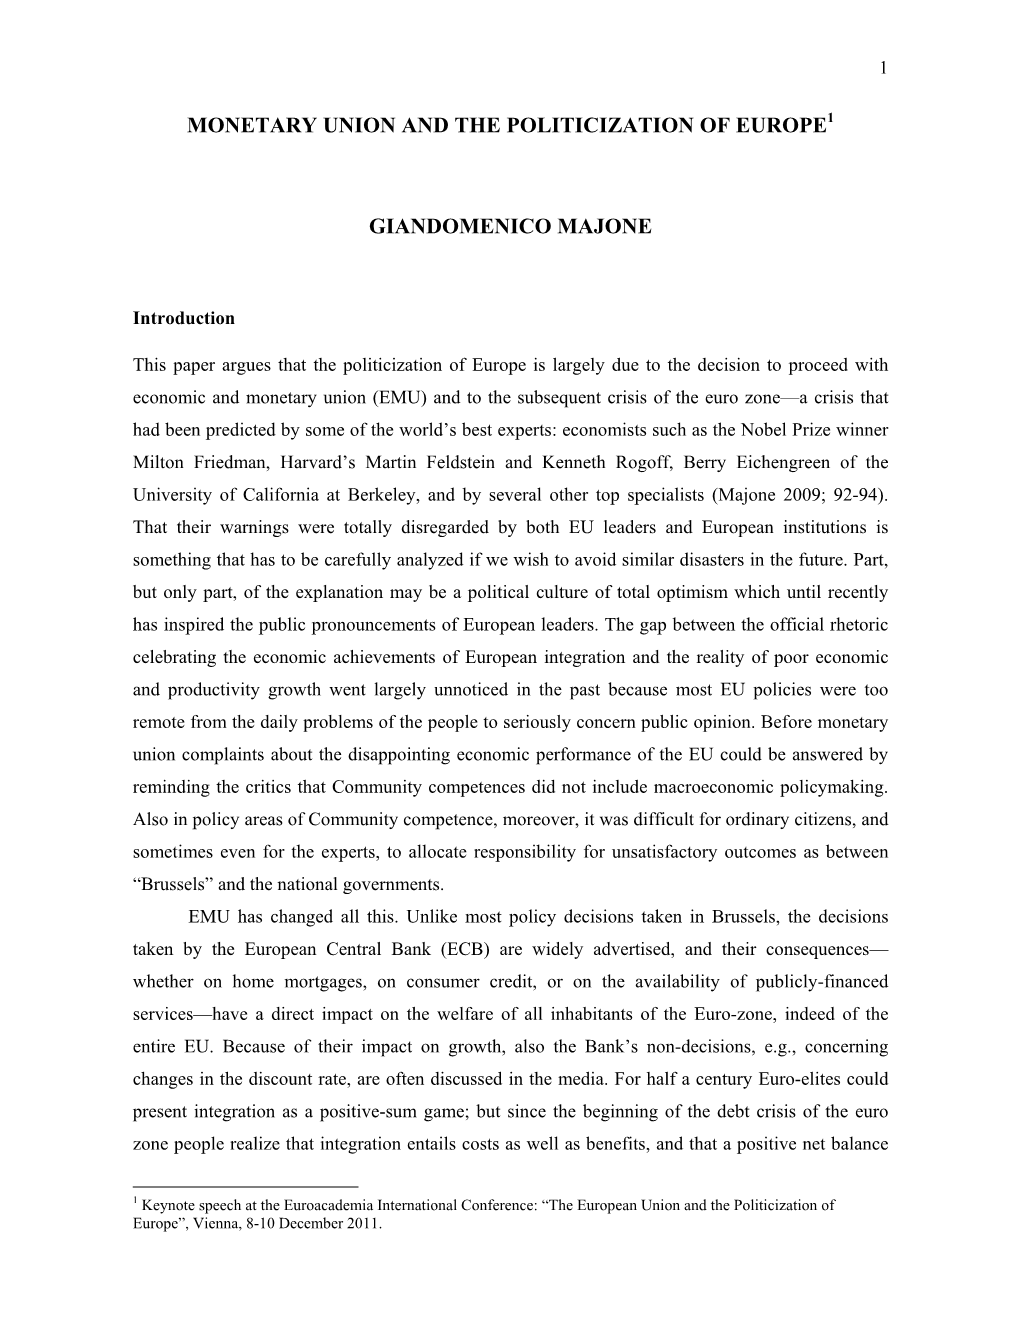 Giandomenico Majone-Monetary Union and the Politicization Of